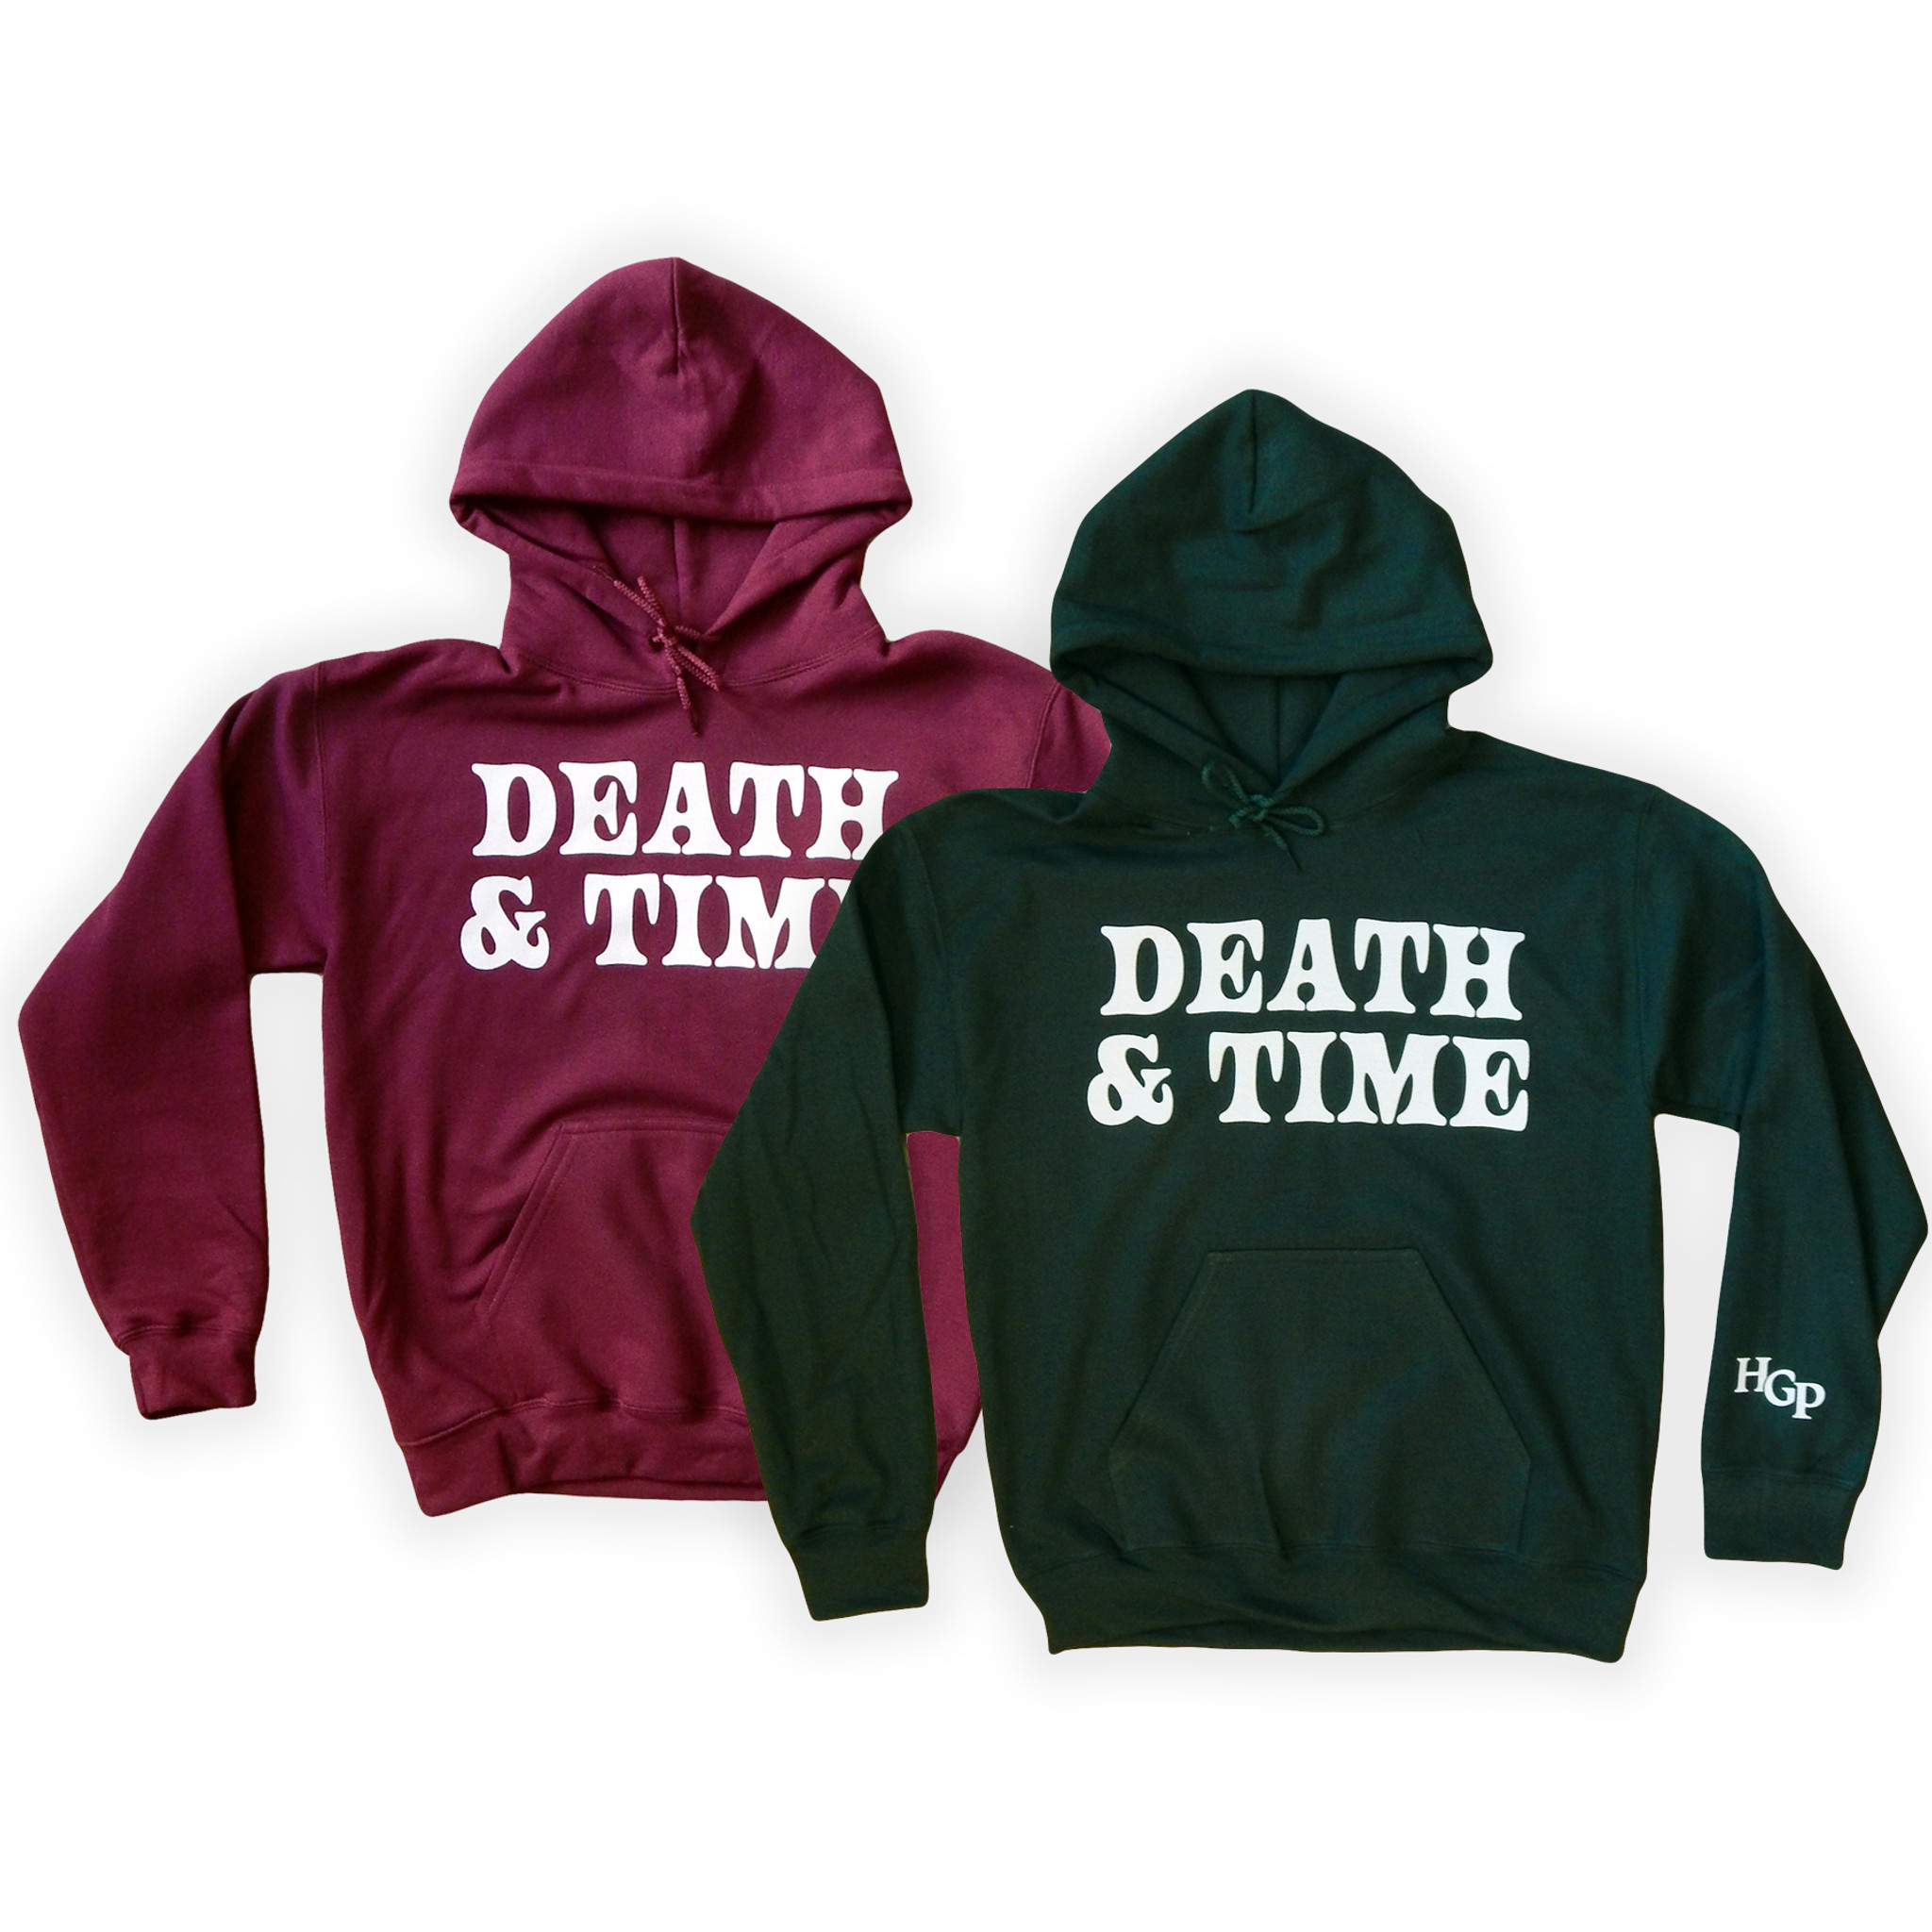 Death & Time Hoodie